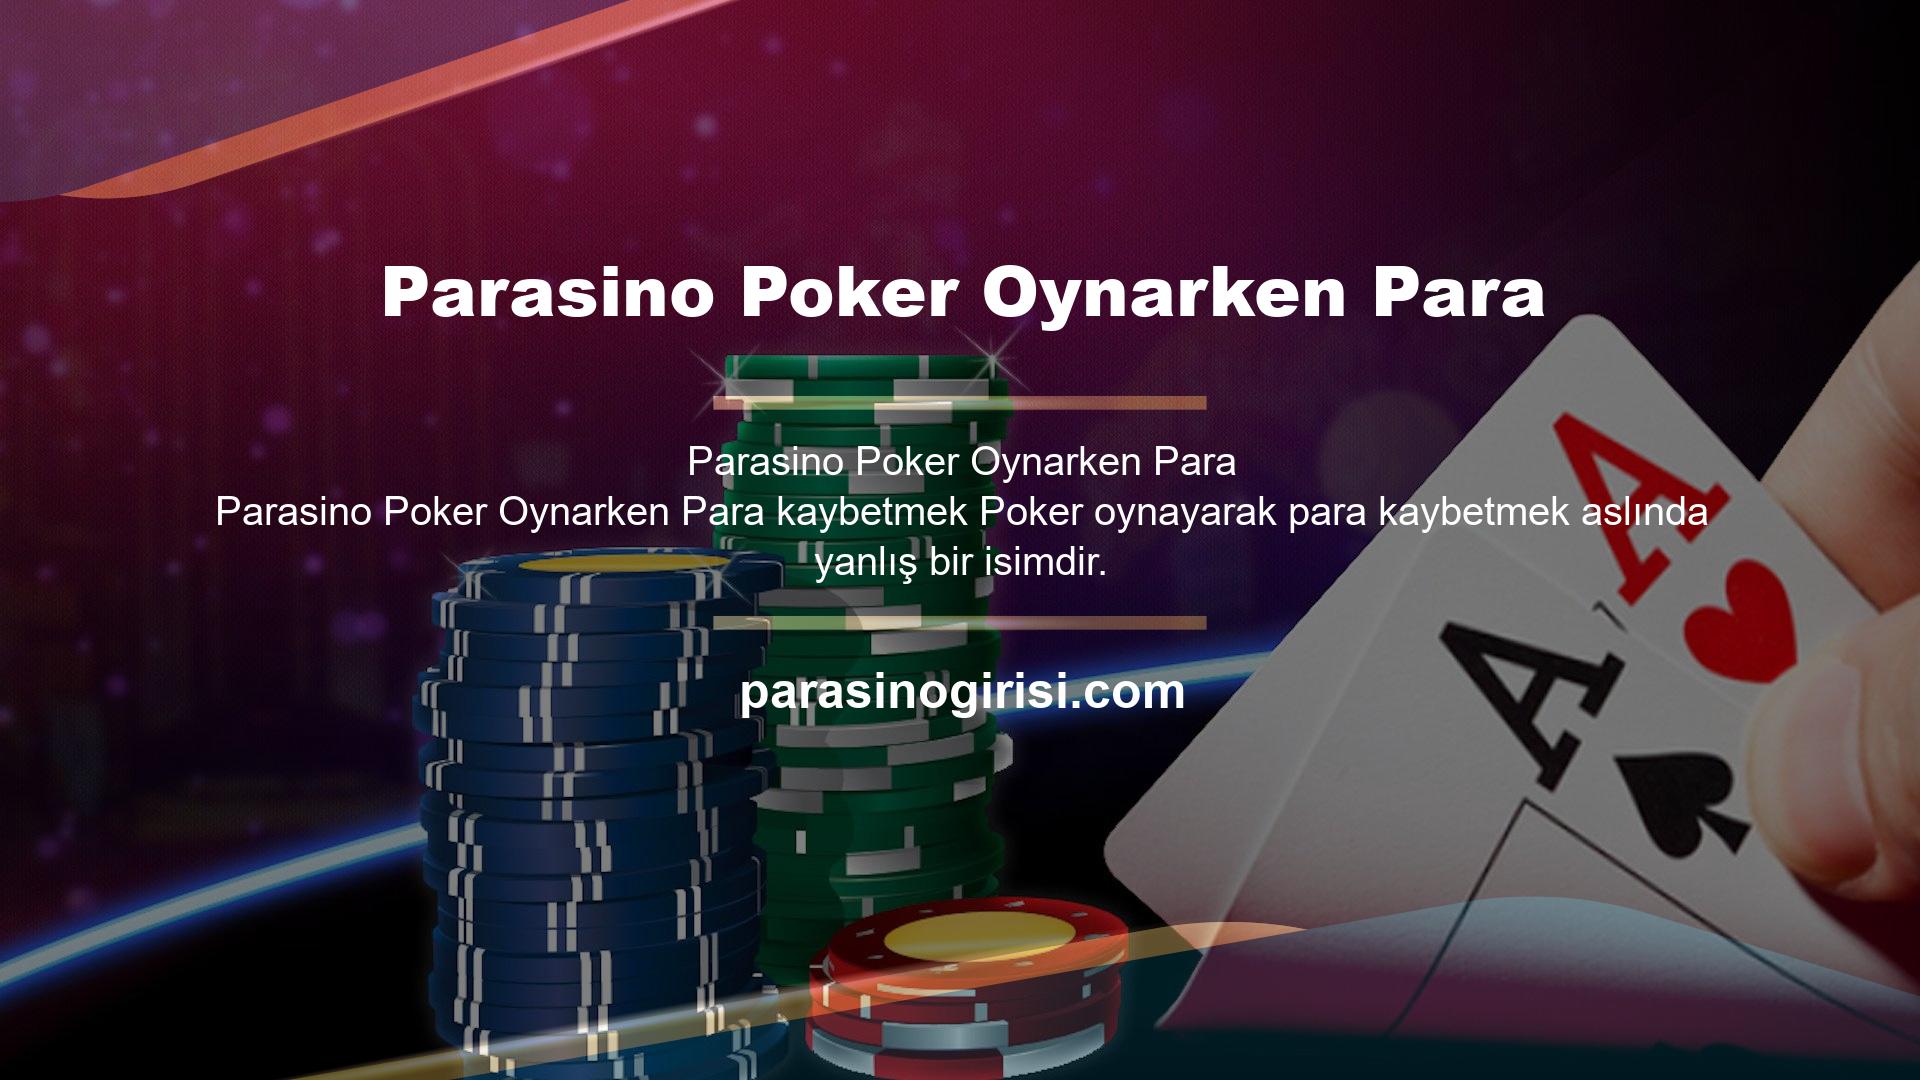 Poker hoş yapısı ile dikkat çeken bir oyun olup para kazanarak dikkat çeken bir oyundur